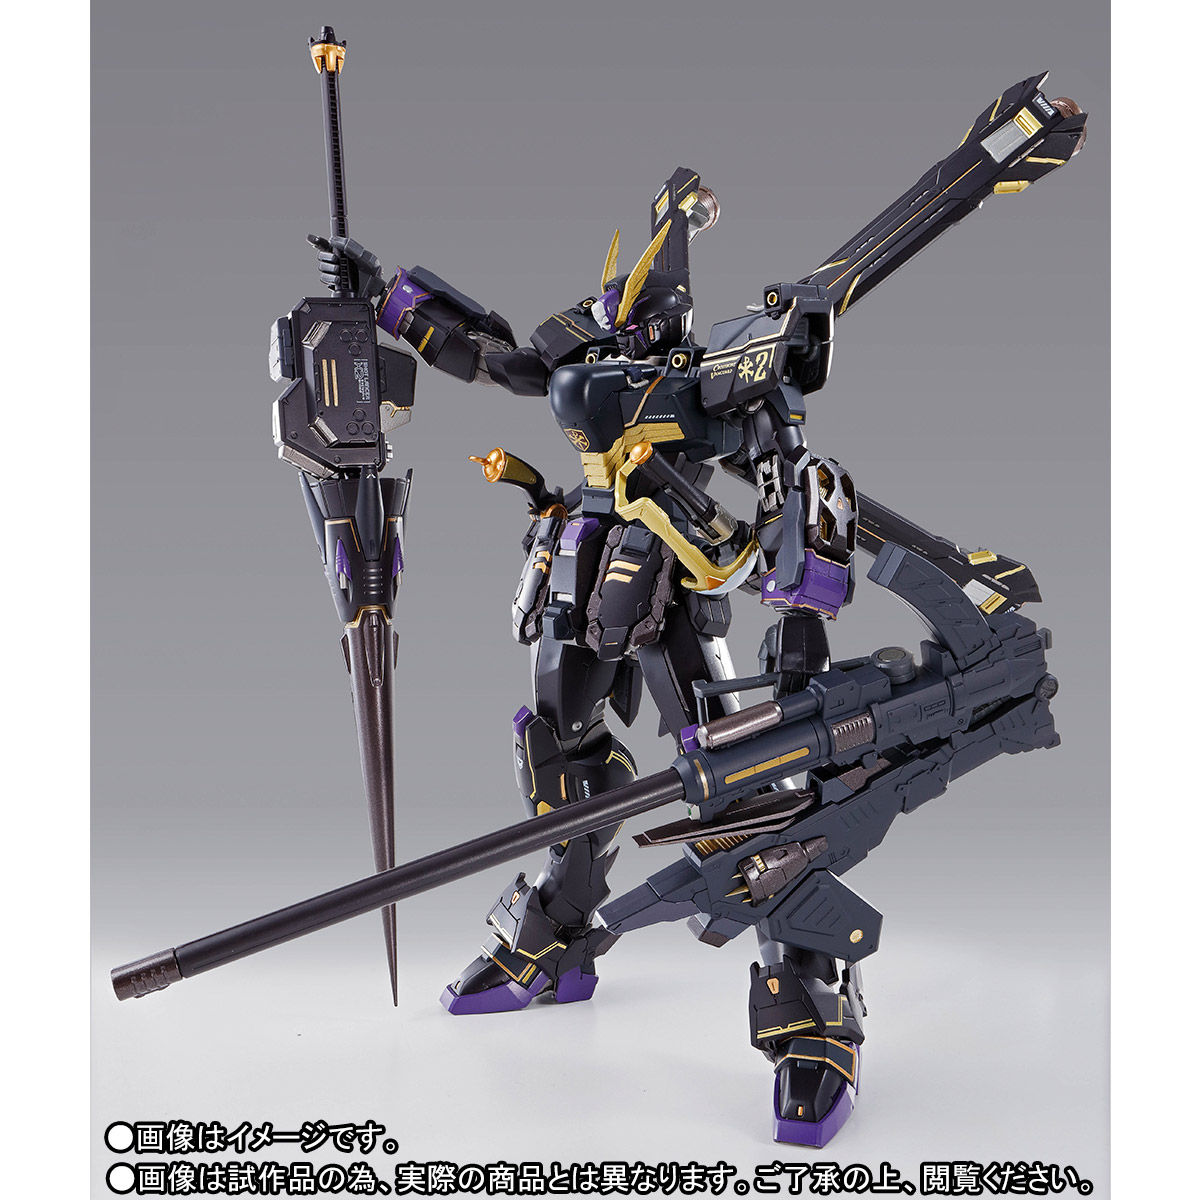 【限定販売】METAL BUILD『クロスボーン・ガンダムX2』機動戦士クロスボーン・ガンダム 可動フィギュア-003